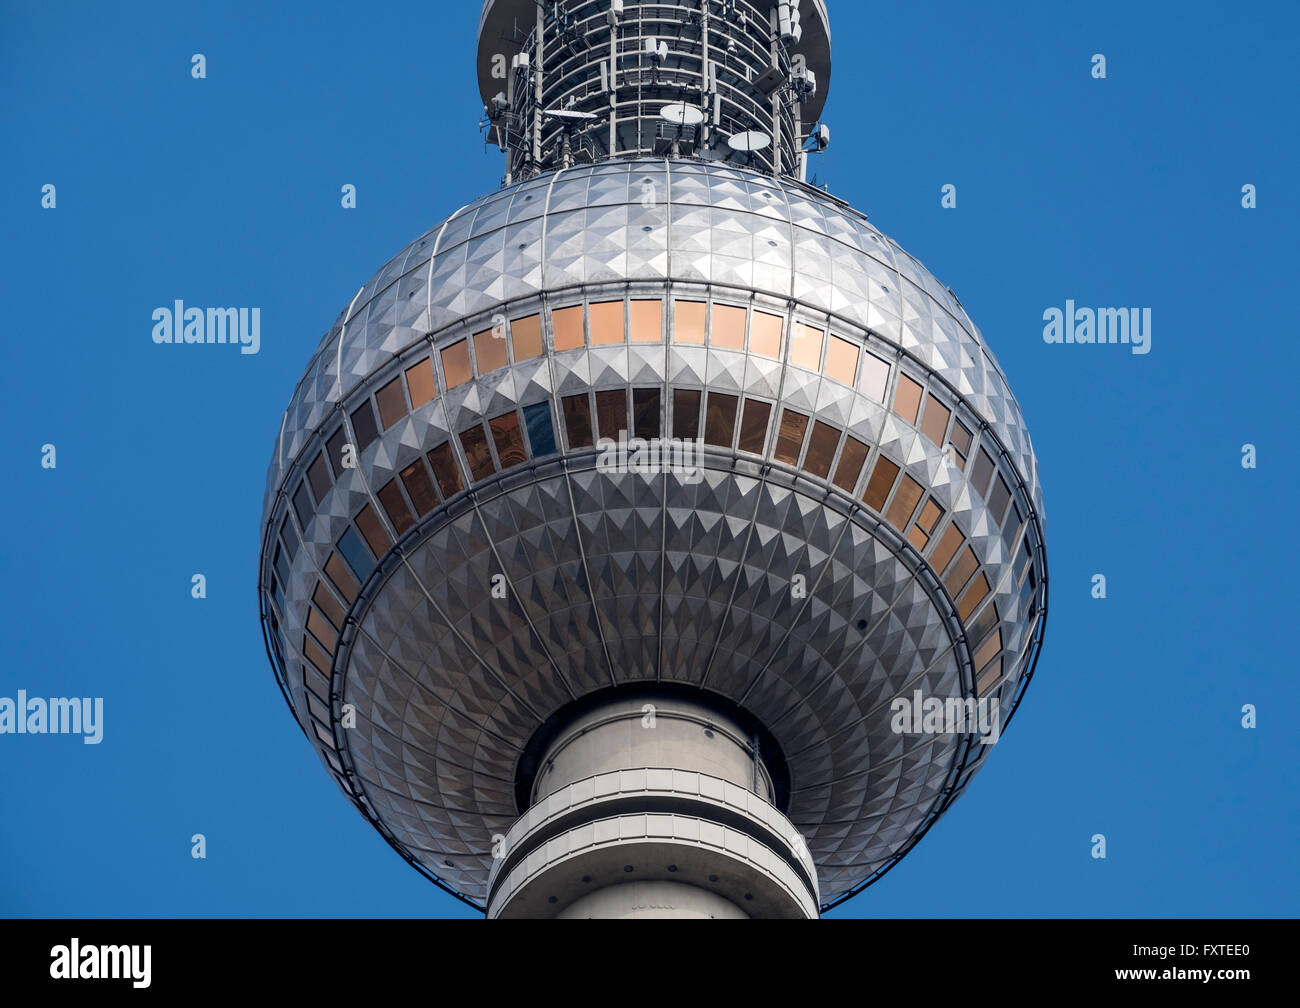 Détail de la tour de télévision ou Telecafè à Alexanderplatz Mitte Berlin Allemagne Banque D'Images